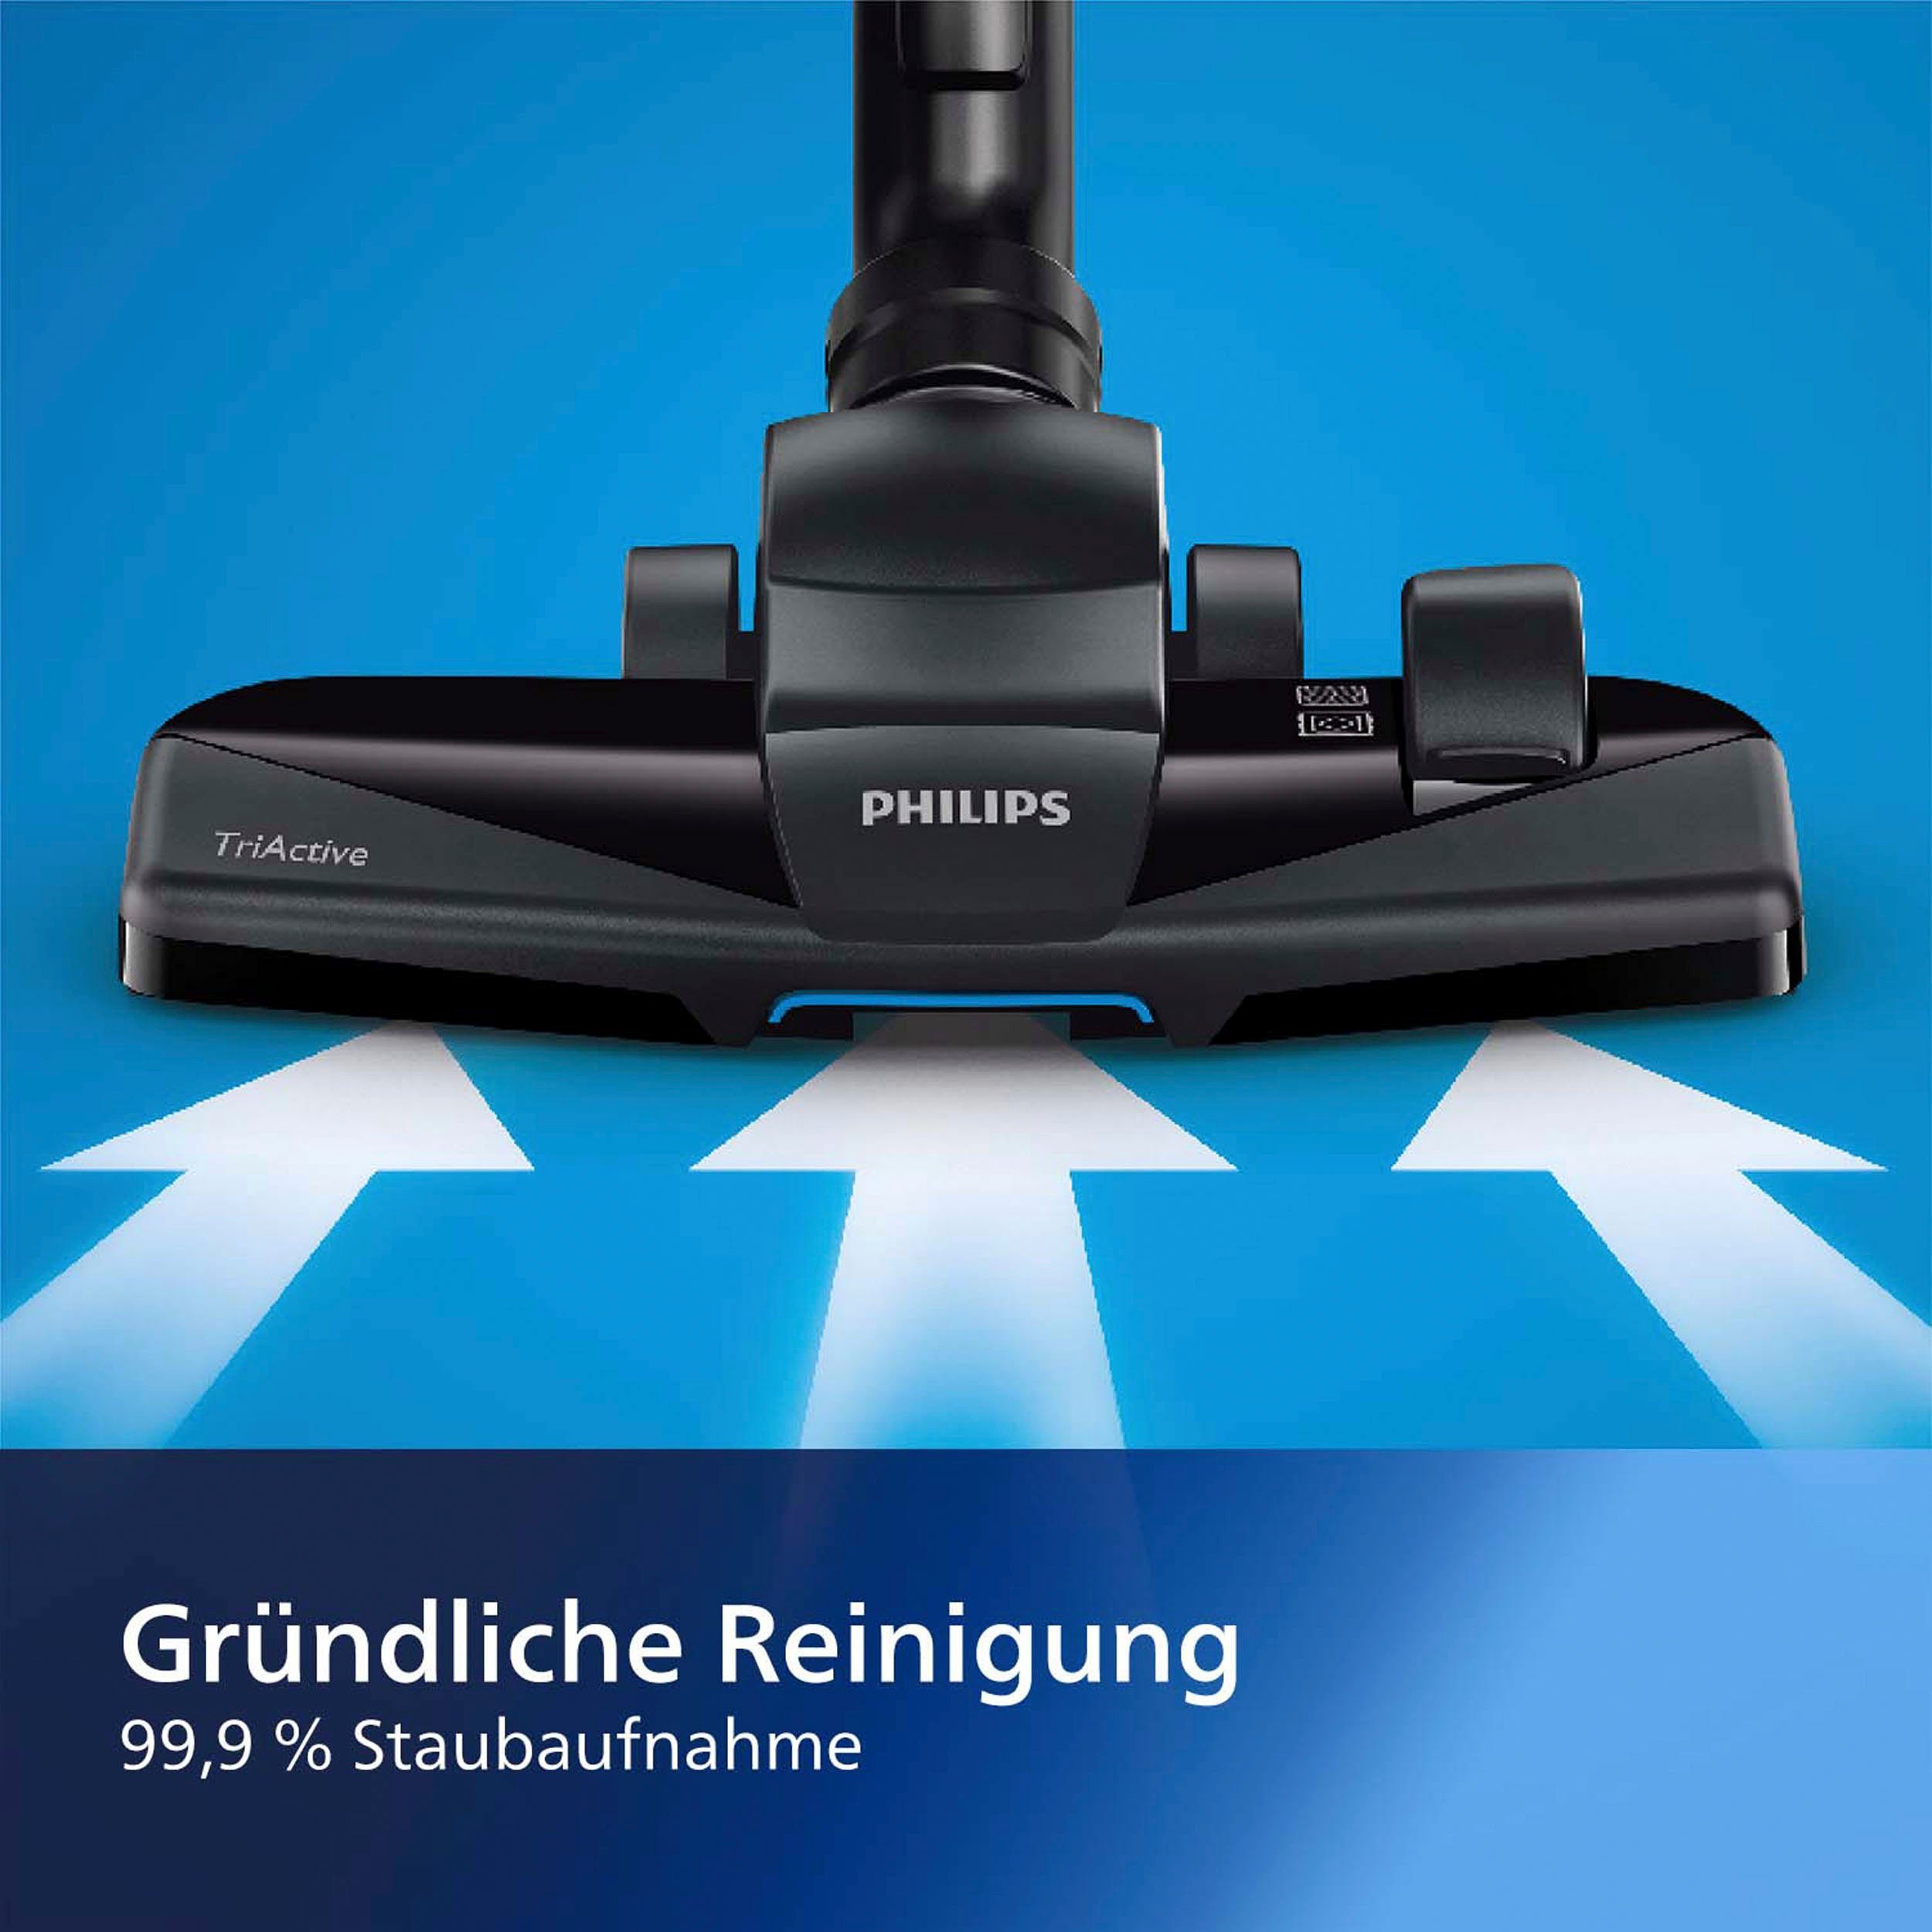 mit Bodenstaubsauger XD3110/09, Philips 3000 series 900 W, Beutel